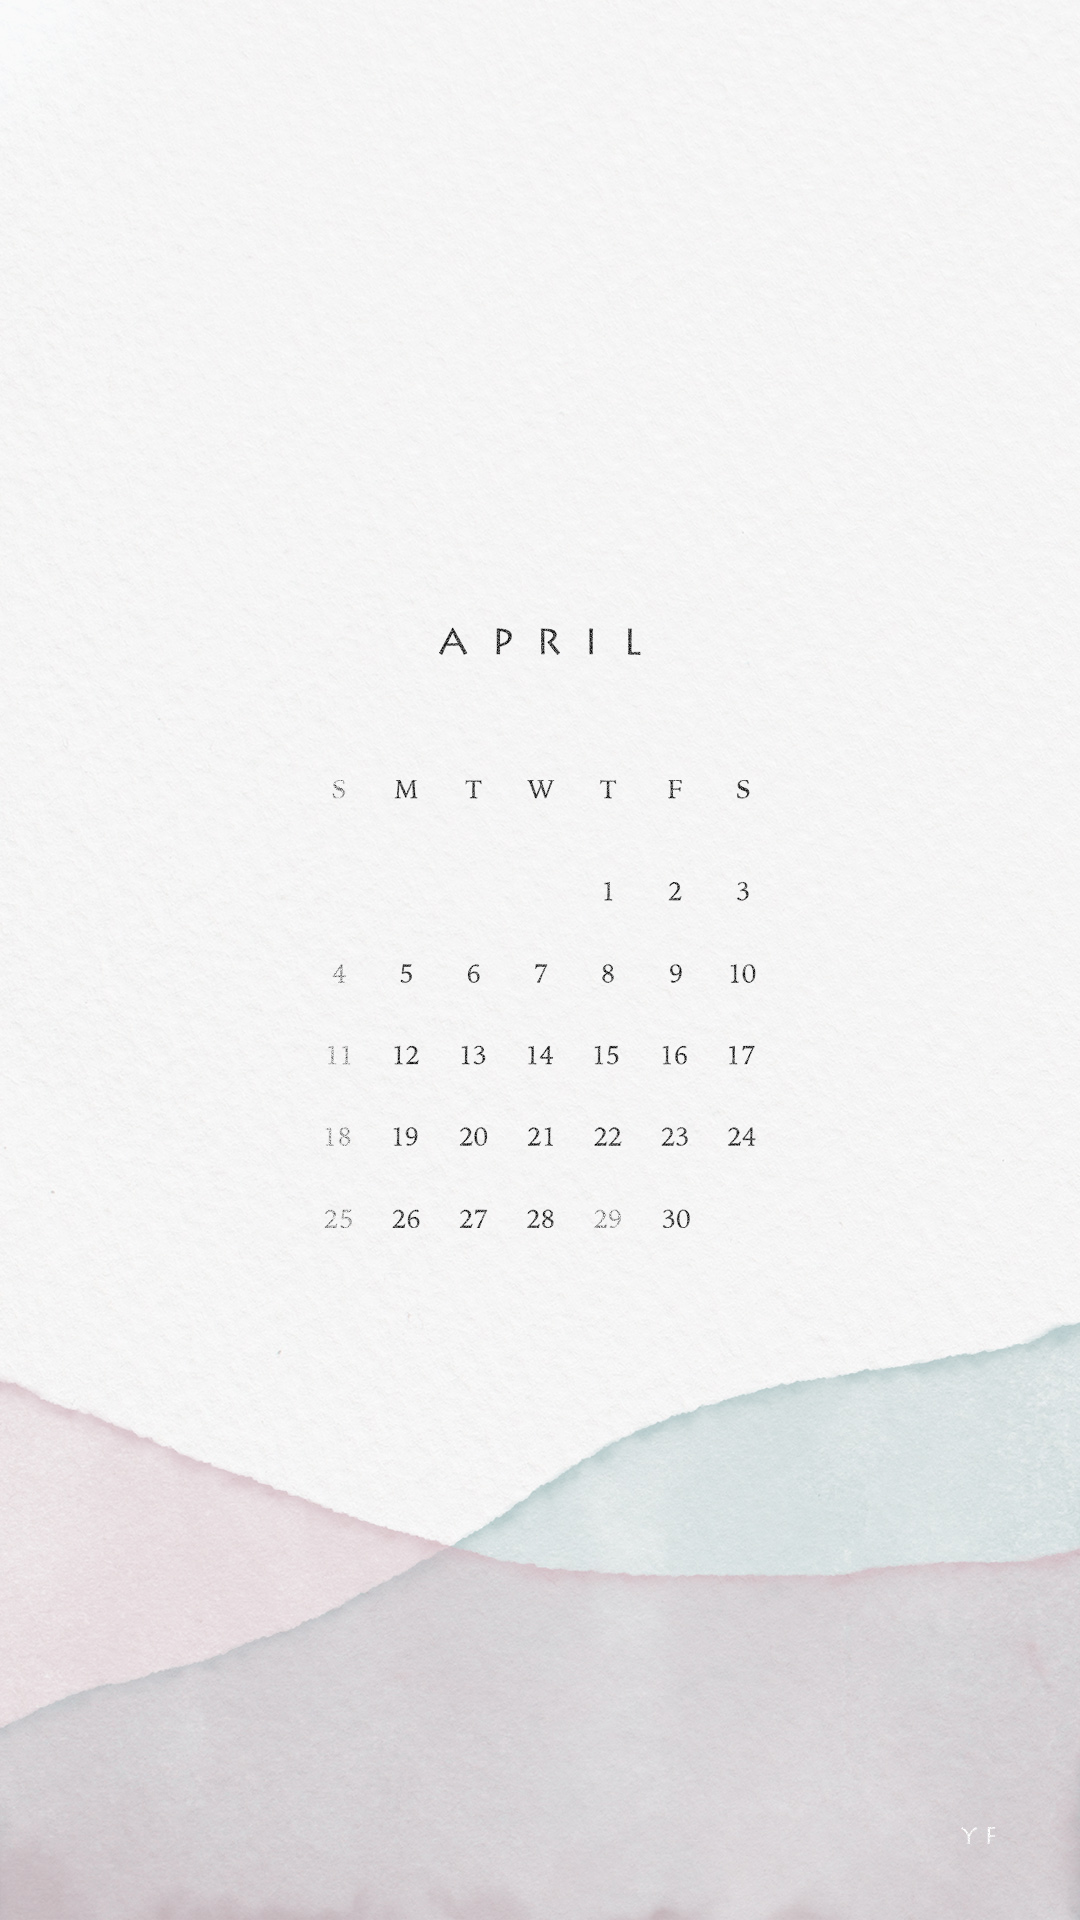 2021年4月のiPhone版日曜日始まりカレンダー壁紙 パープル×ブルー 1080×1920px